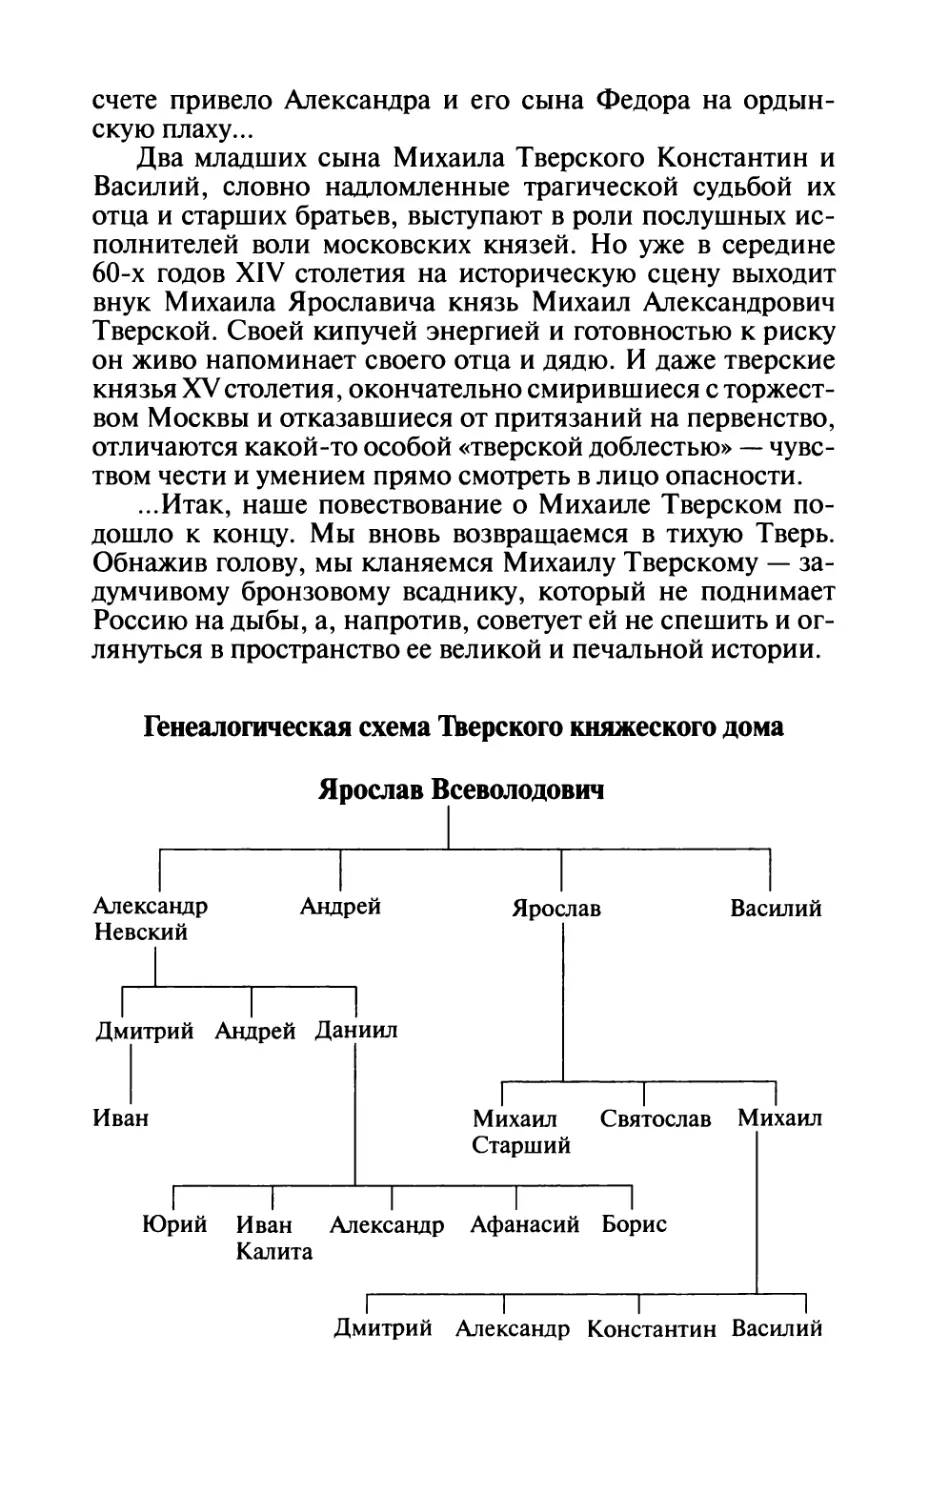 Генеалогическая схема Тверского княжеского дома